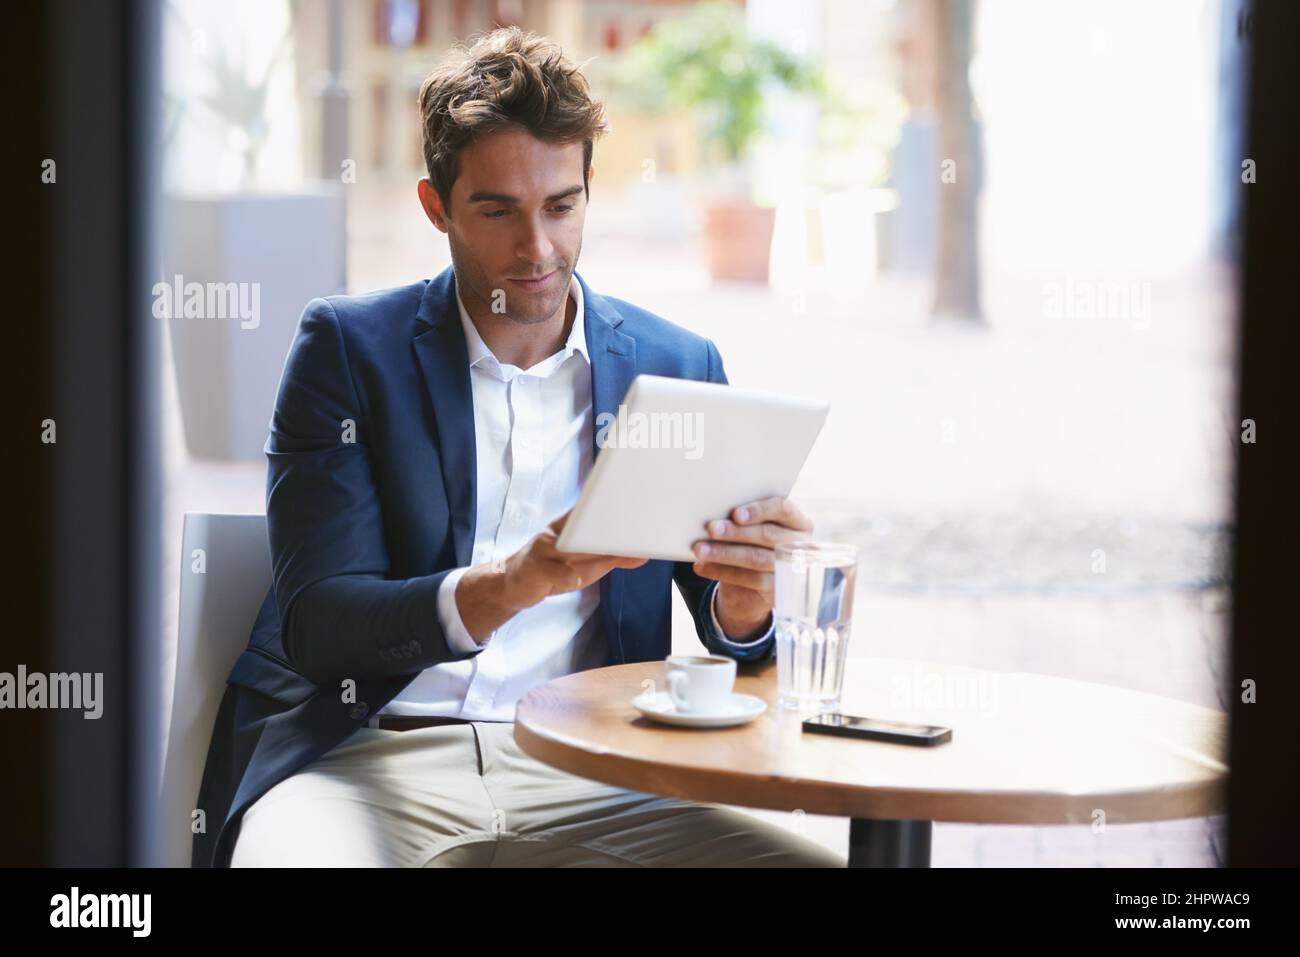 Holt seine Kaffeepause ein. Aufnahme eines jungen Geschäftsmannes, der eine Tasse Kaffee genießt, während er ein digitales Tablet benutzt. Stockfoto